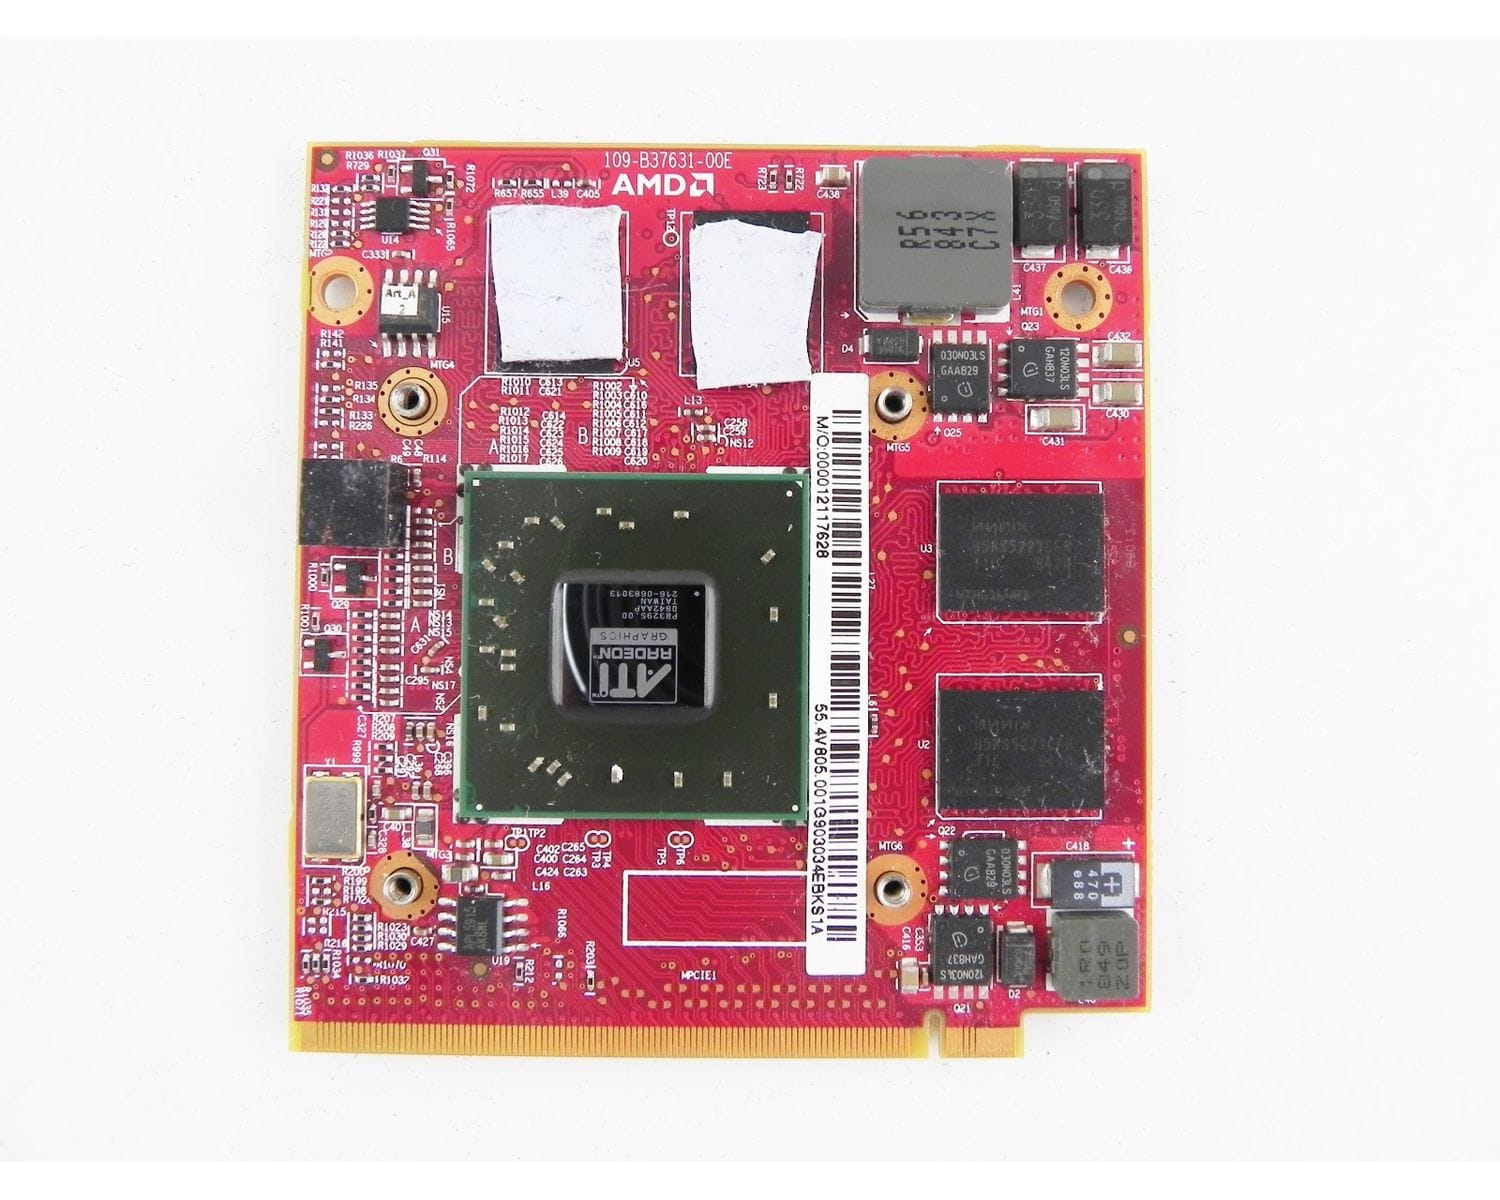 Ati mobility radeon купить. Видеокарта ATI Mobility Radeon hd3650. Видеокарта Acer ATI Mobility Radeon hd2400xt.